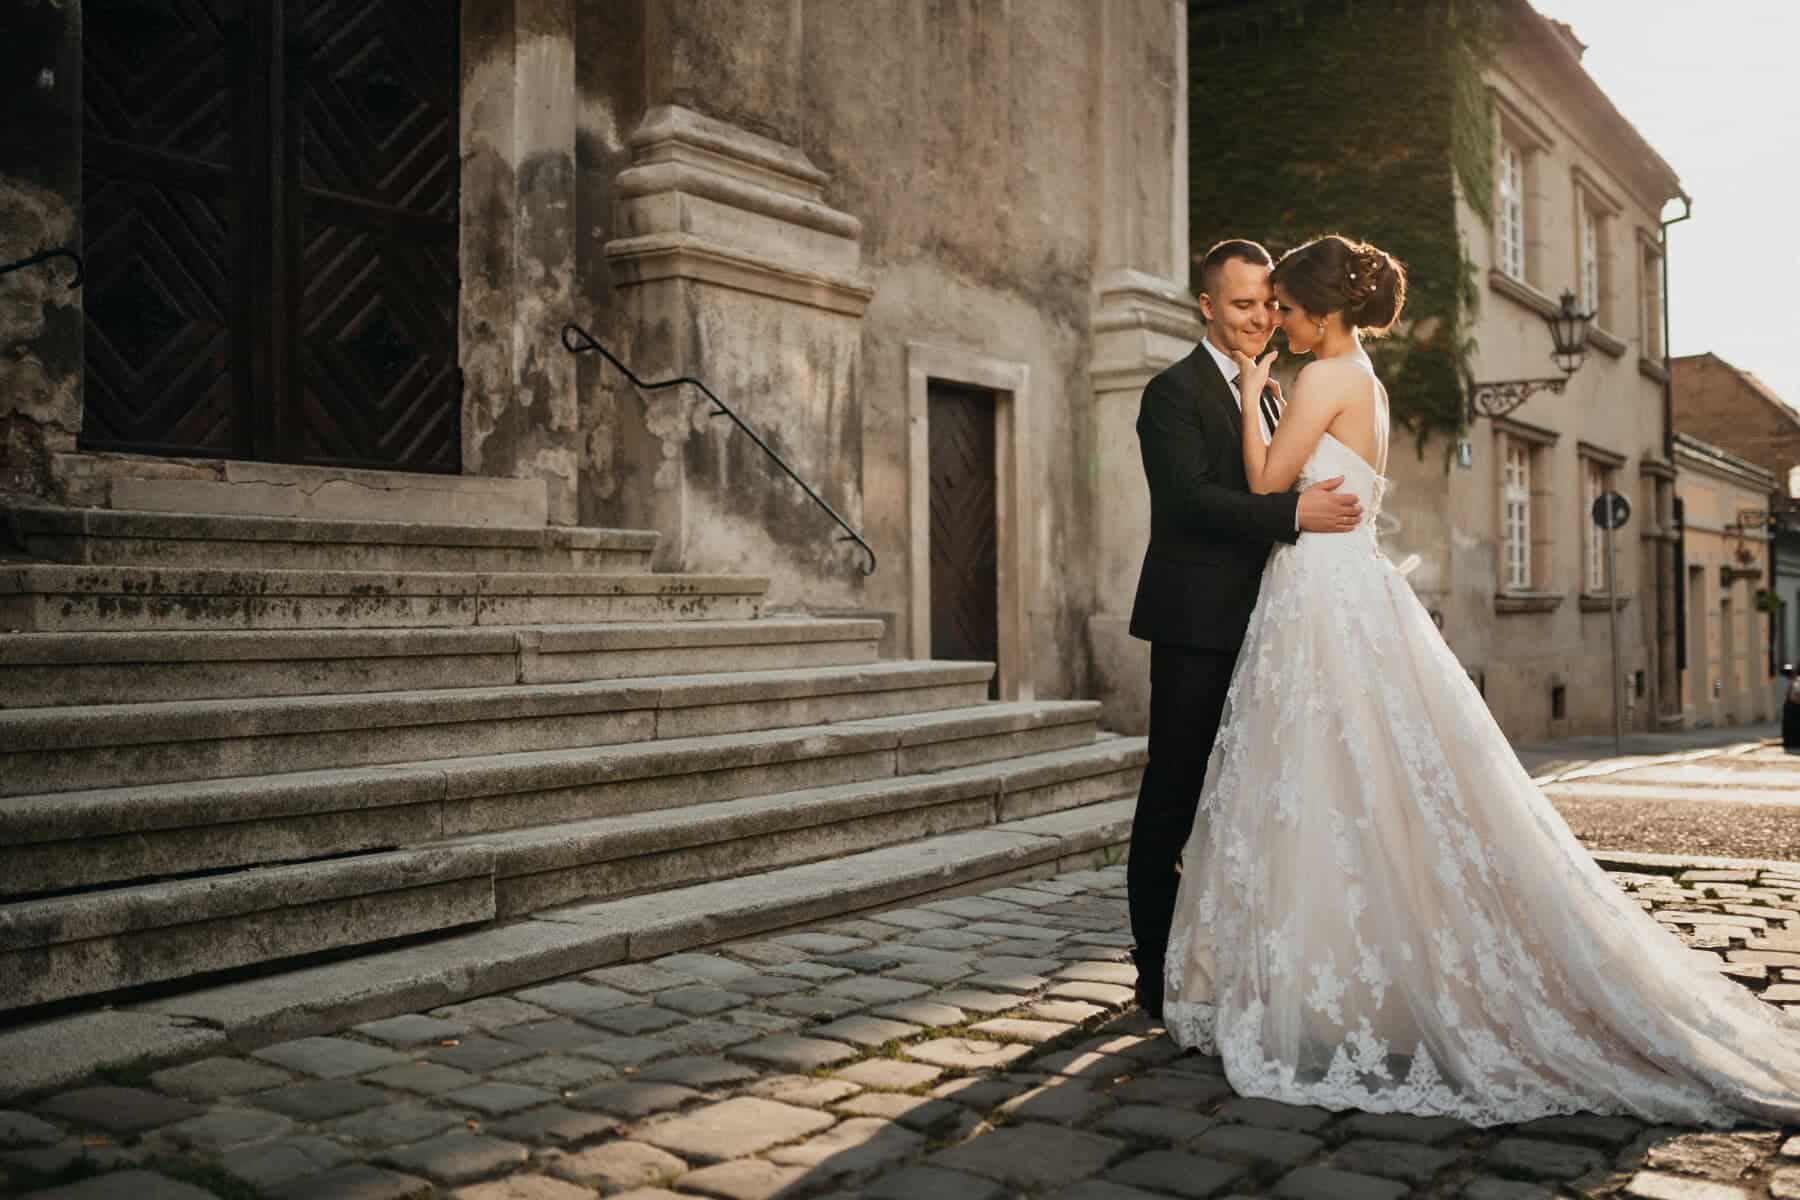 Nel 2021 sono stati celebrati in Italia 180.416 matrimoni, l'86,3% in più rispetto al 2020 